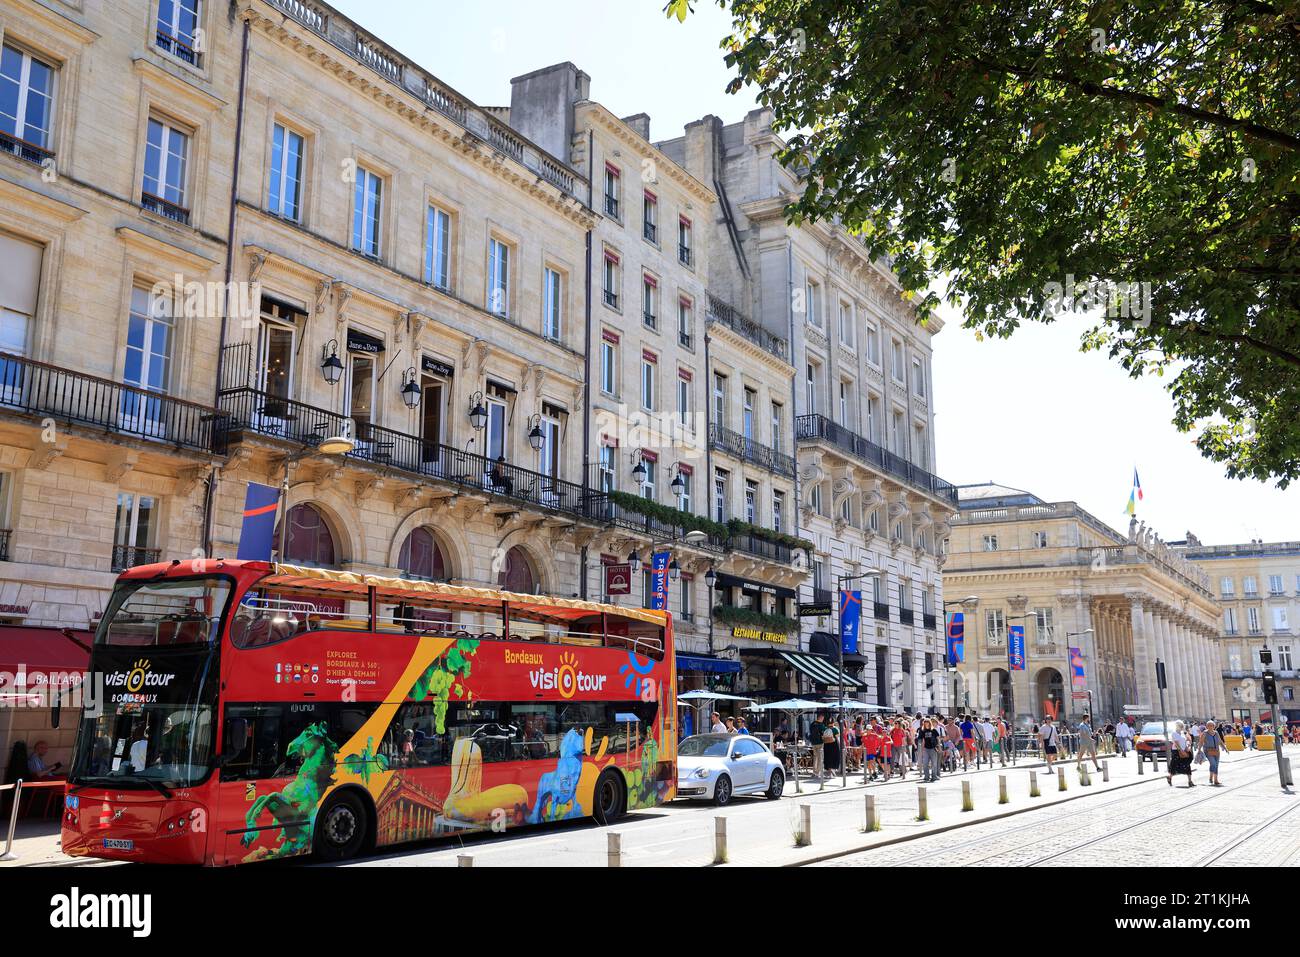 Autobus a due piani Visiotour di fronte all'ufficio turistico di Bordeaux per visitare la città. Turismo, turisti e visita a Bordeaux. Bordeaux, Gironde, fra Foto Stock